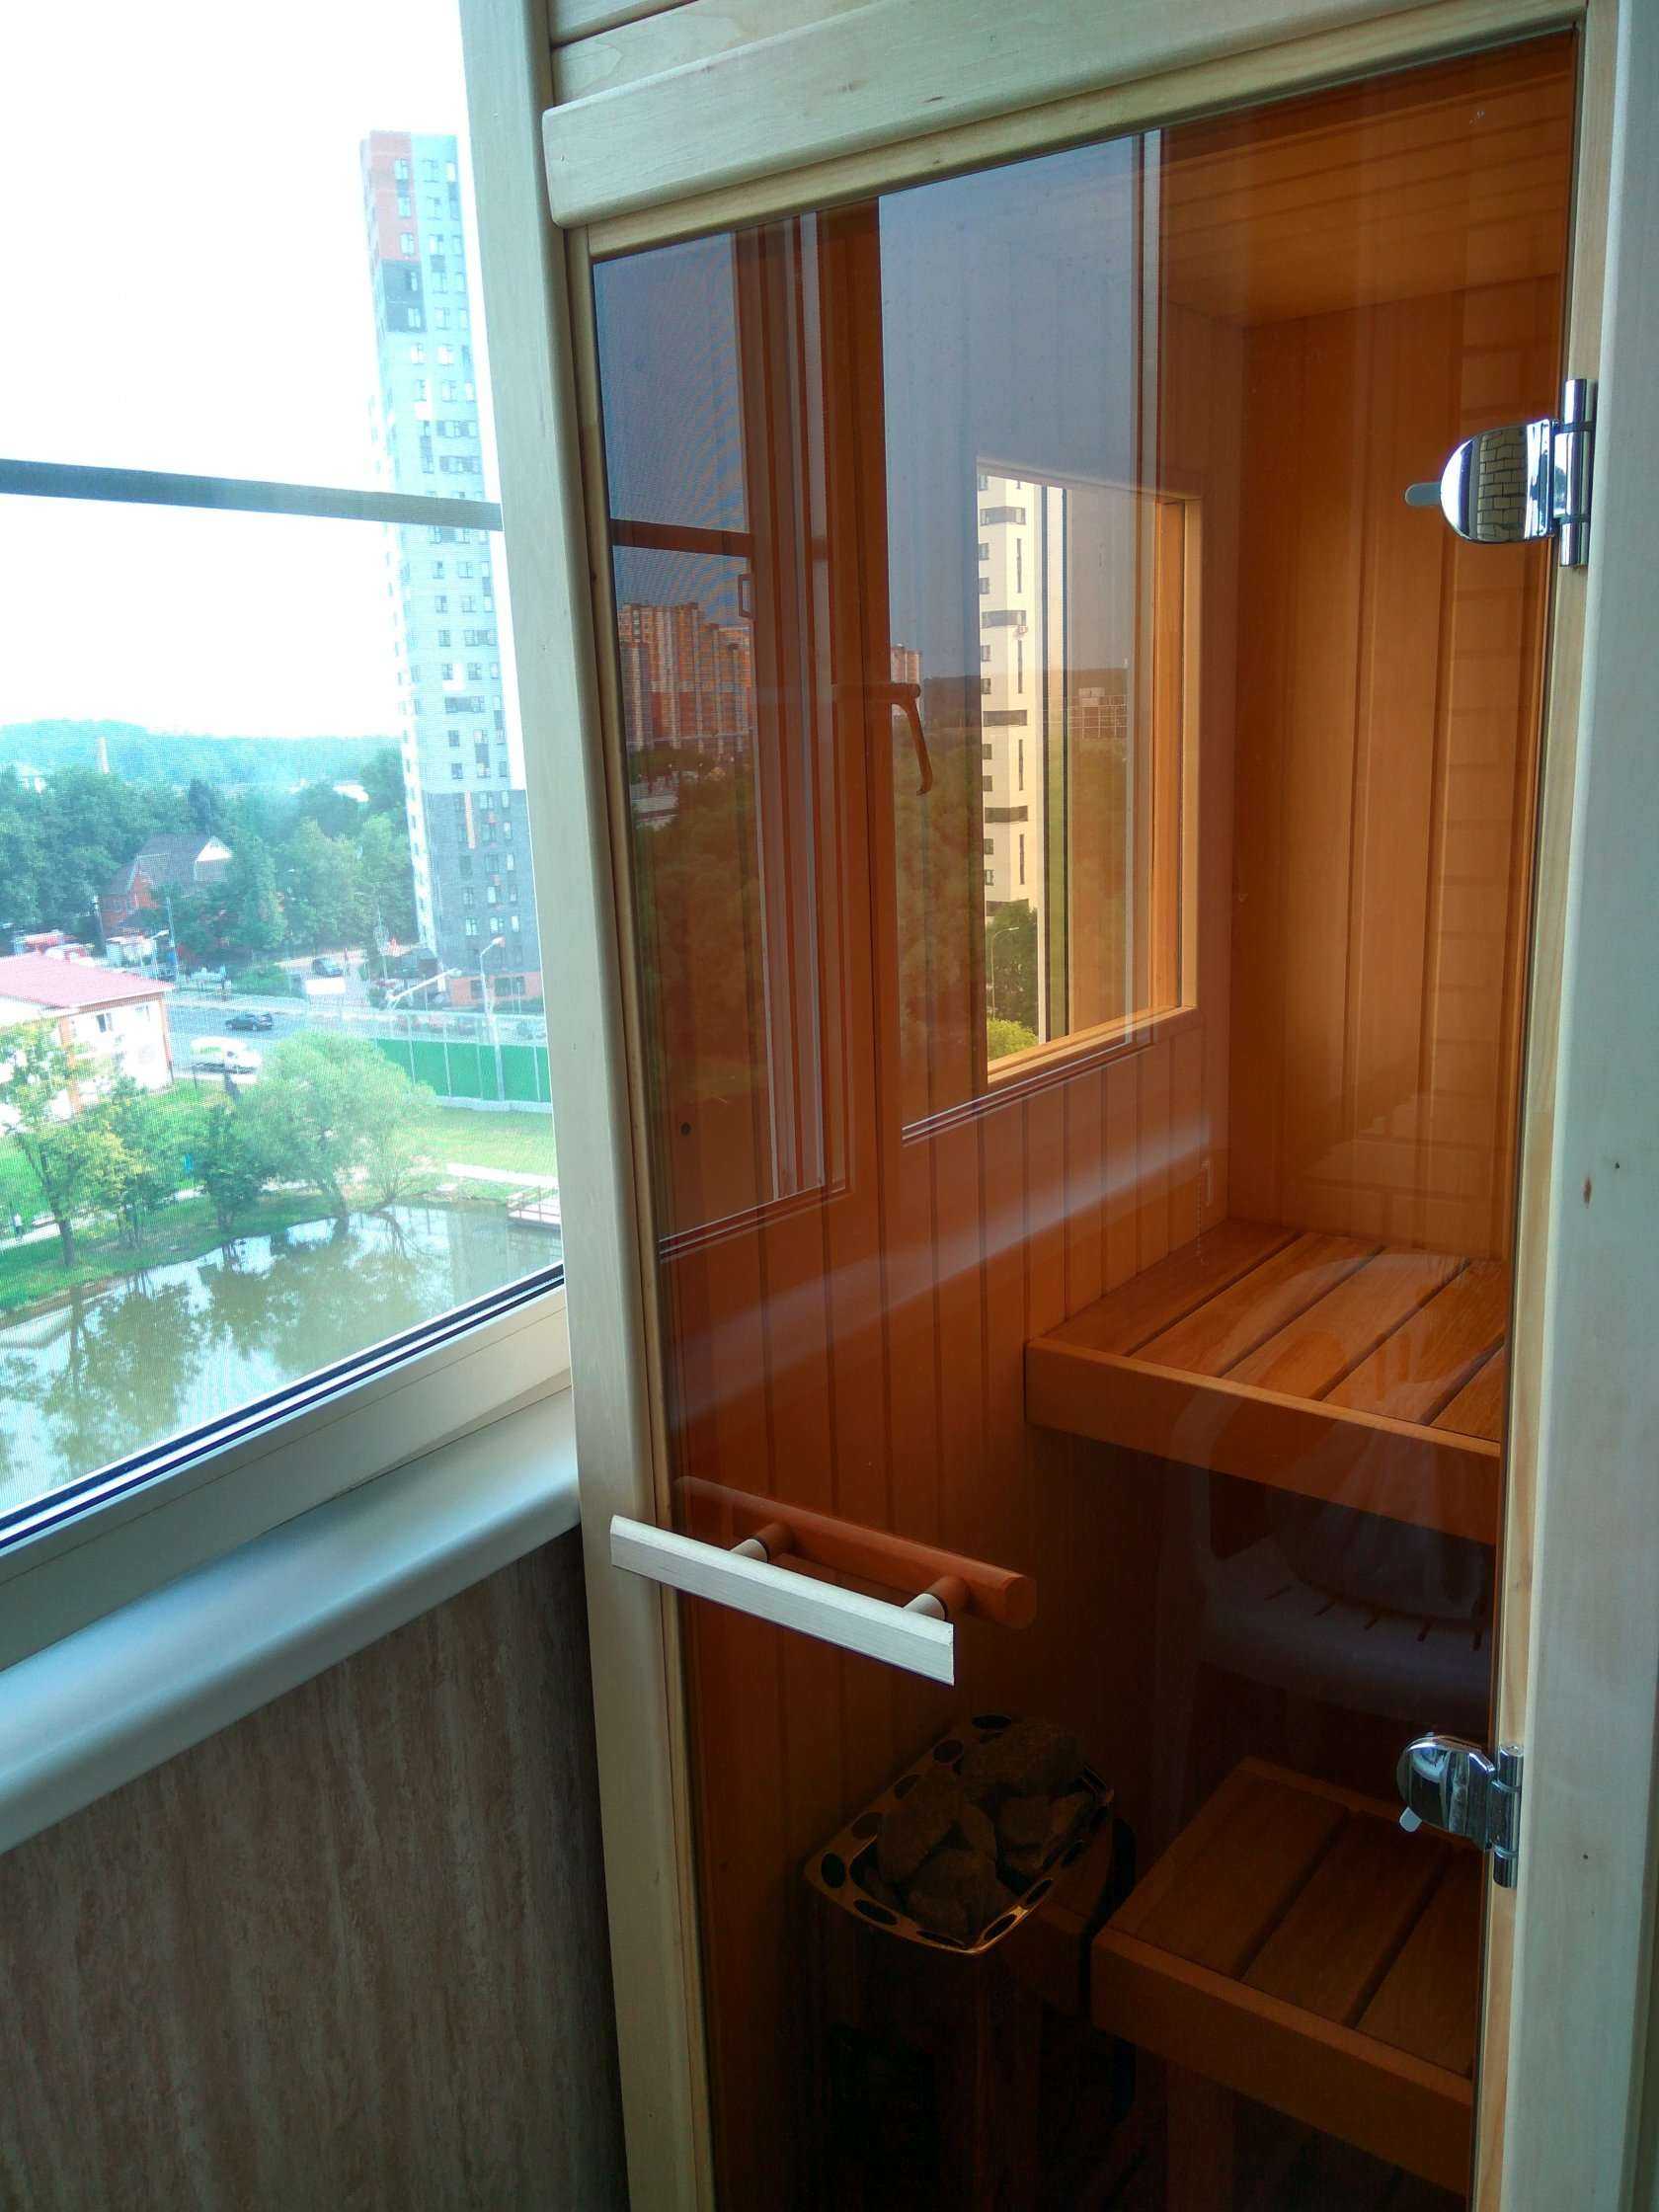 Сауна на балконе или лоджии в квартире: баня, парилка своими руками